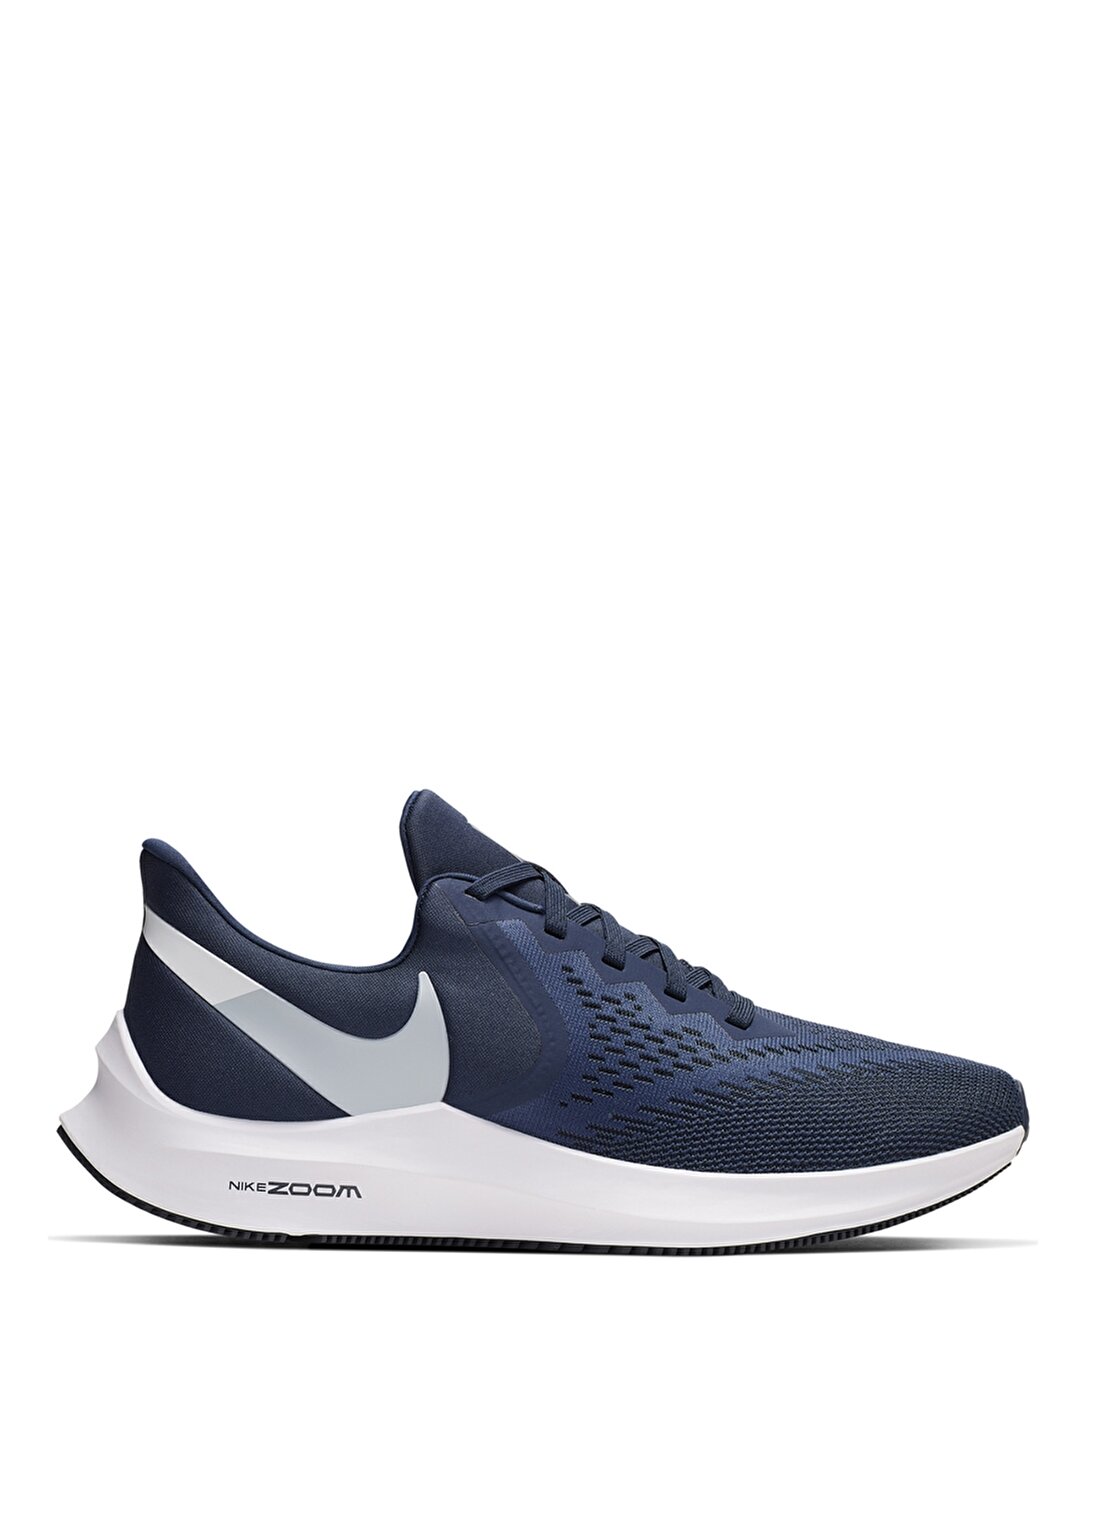 Nike Zoom Winflo 6 Erkek Koşu Ayakkabısı